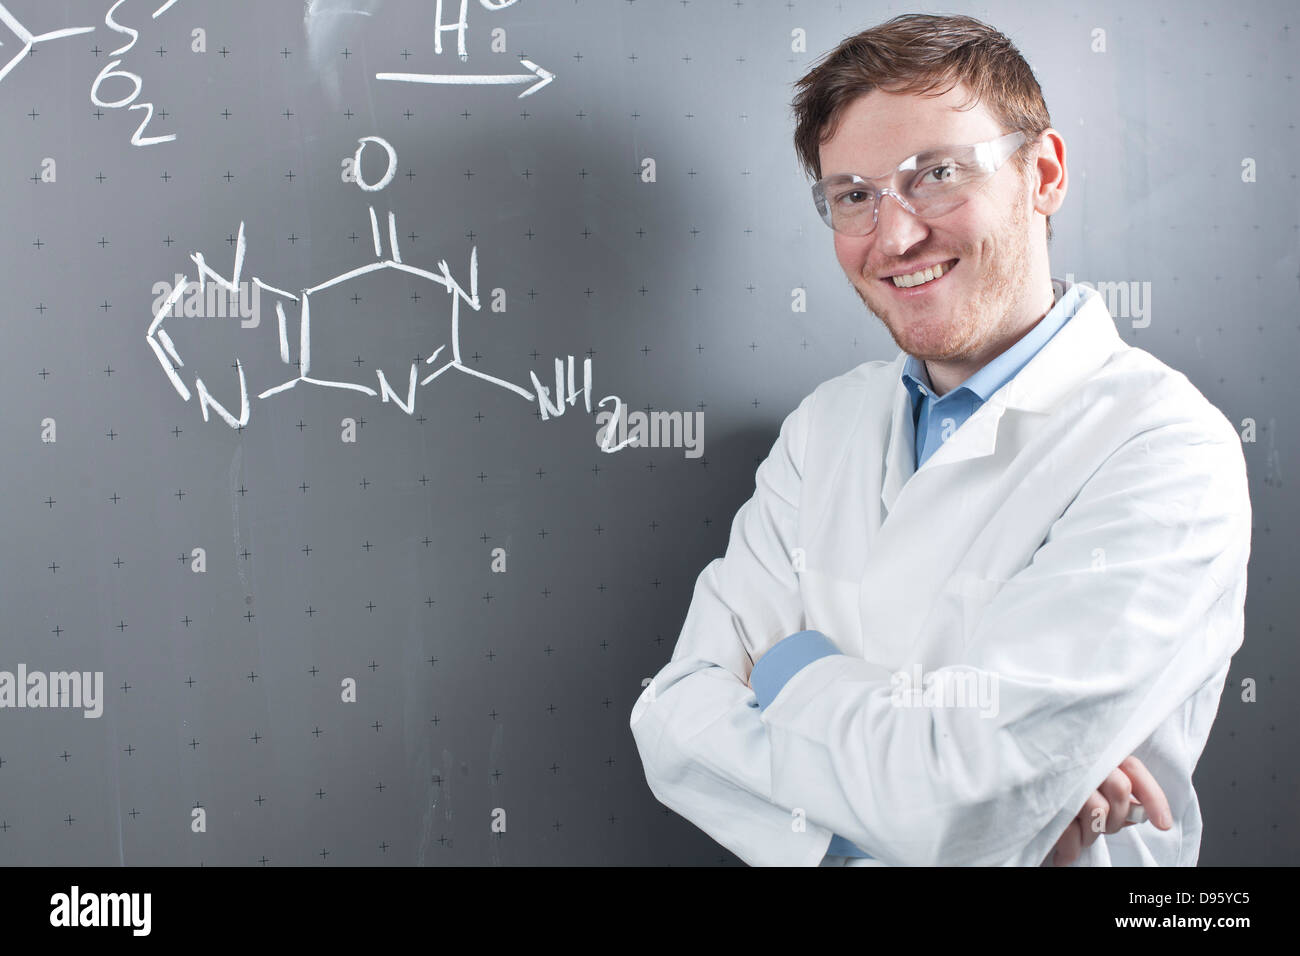 Allemagne, Portrait de jeune scientifique debout à côté d'équation chimique sur tableau, smiling Banque D'Images